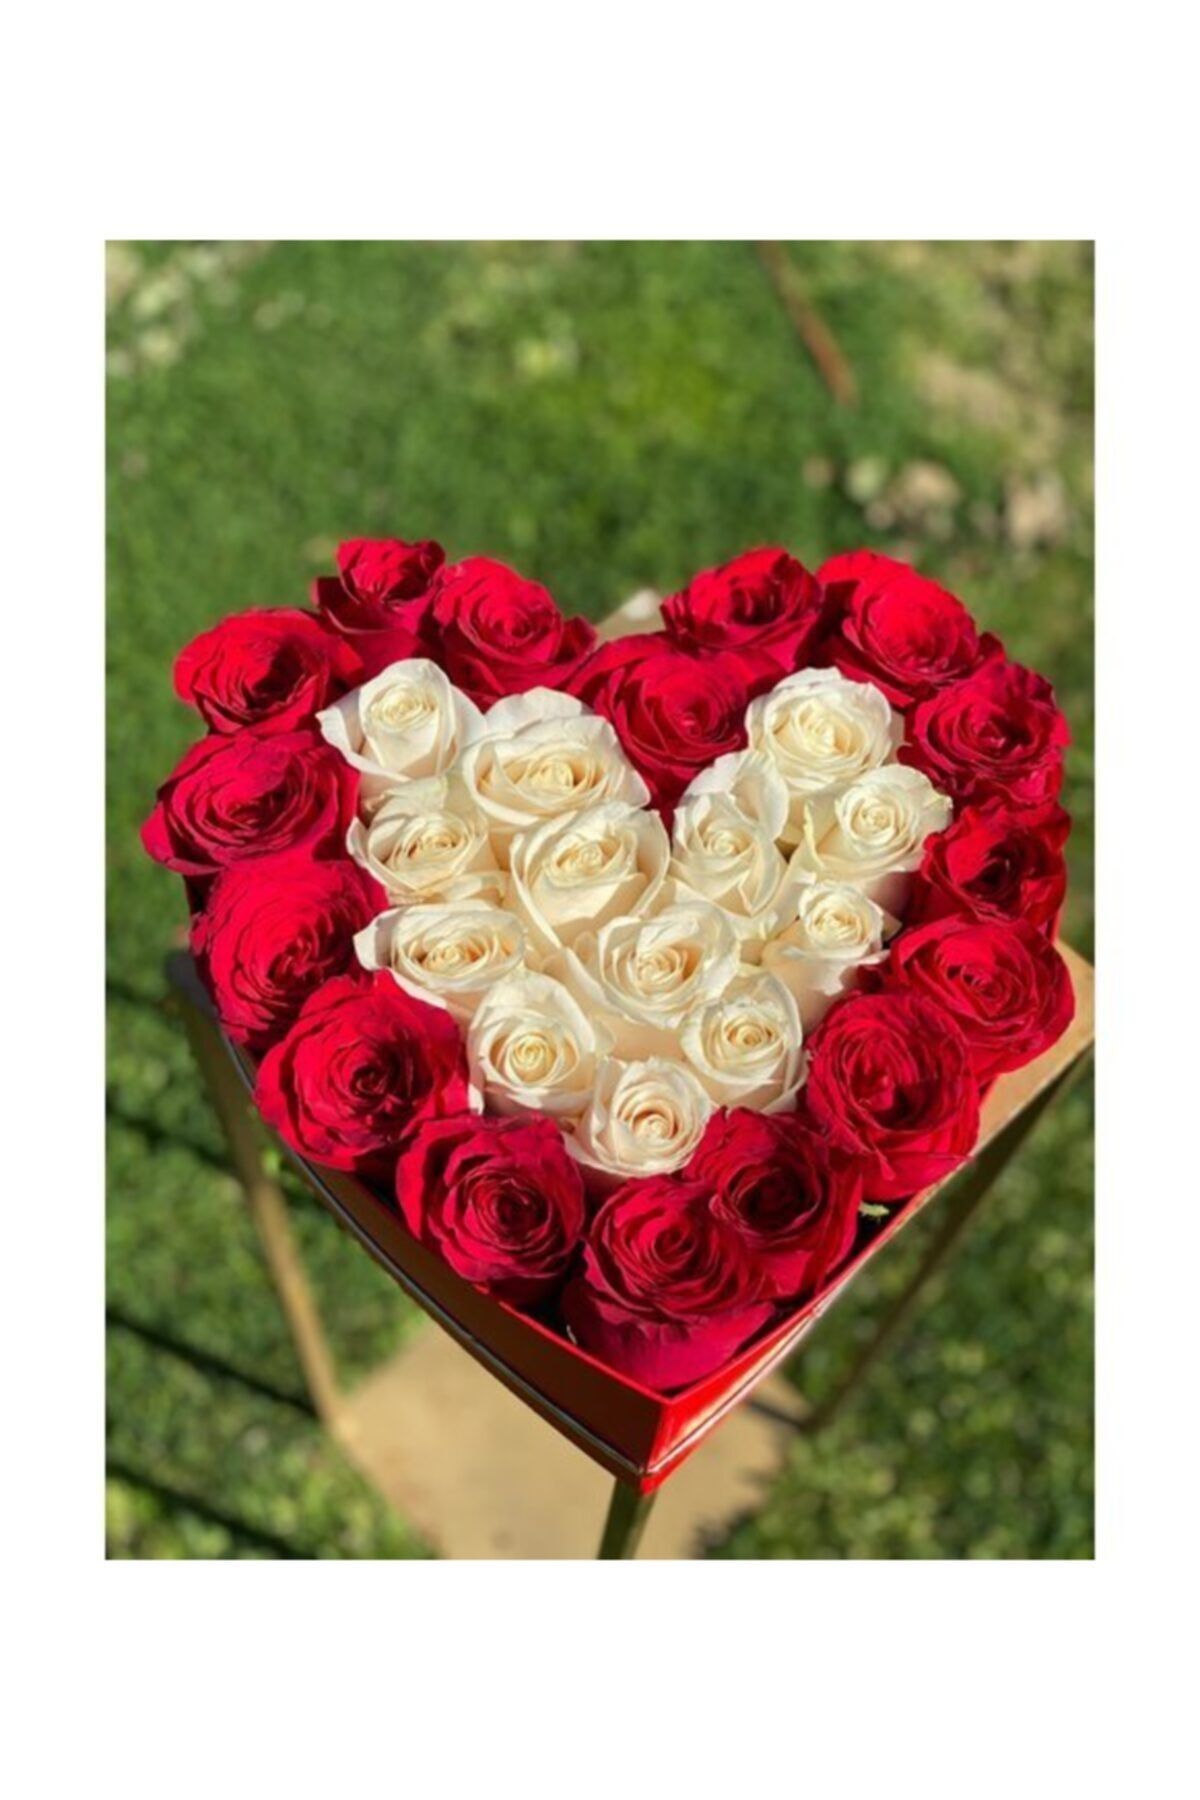 Evsay Kalpli Kutuda Gerçek Görünümlü Yapay Kadife Kırmızı Beyaz Güller